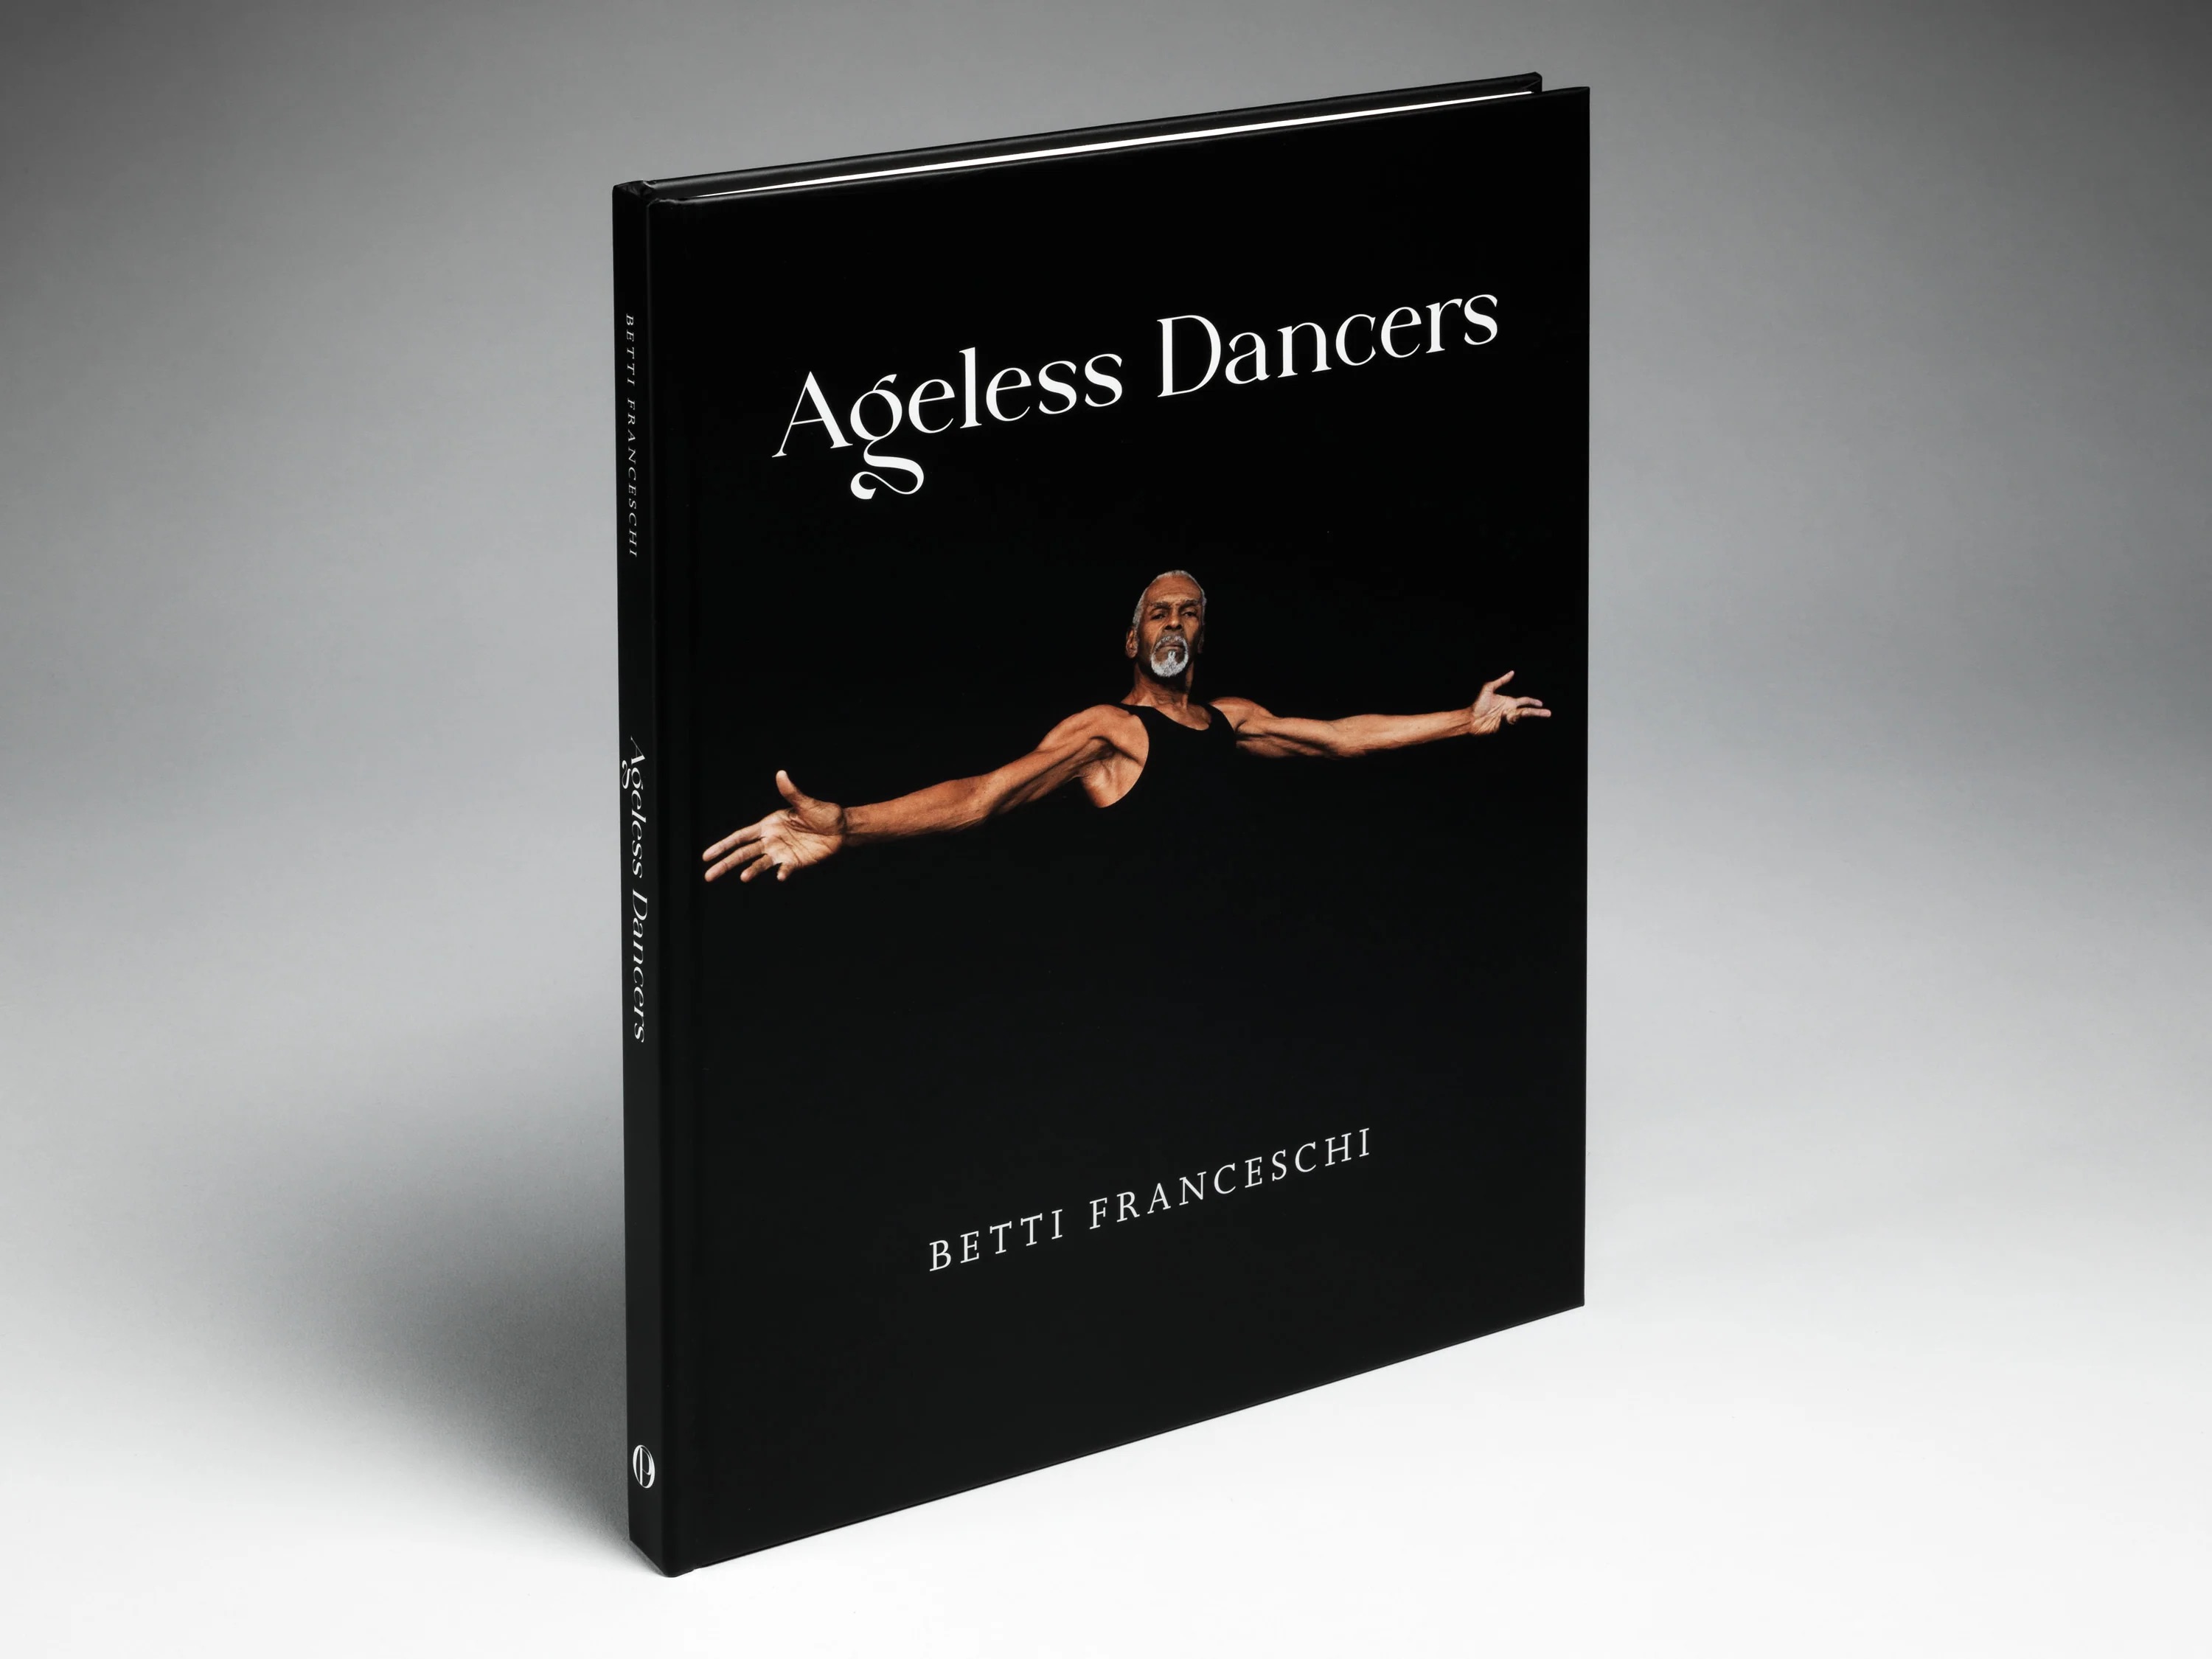 Ageless Dancers by Betti Franceschi